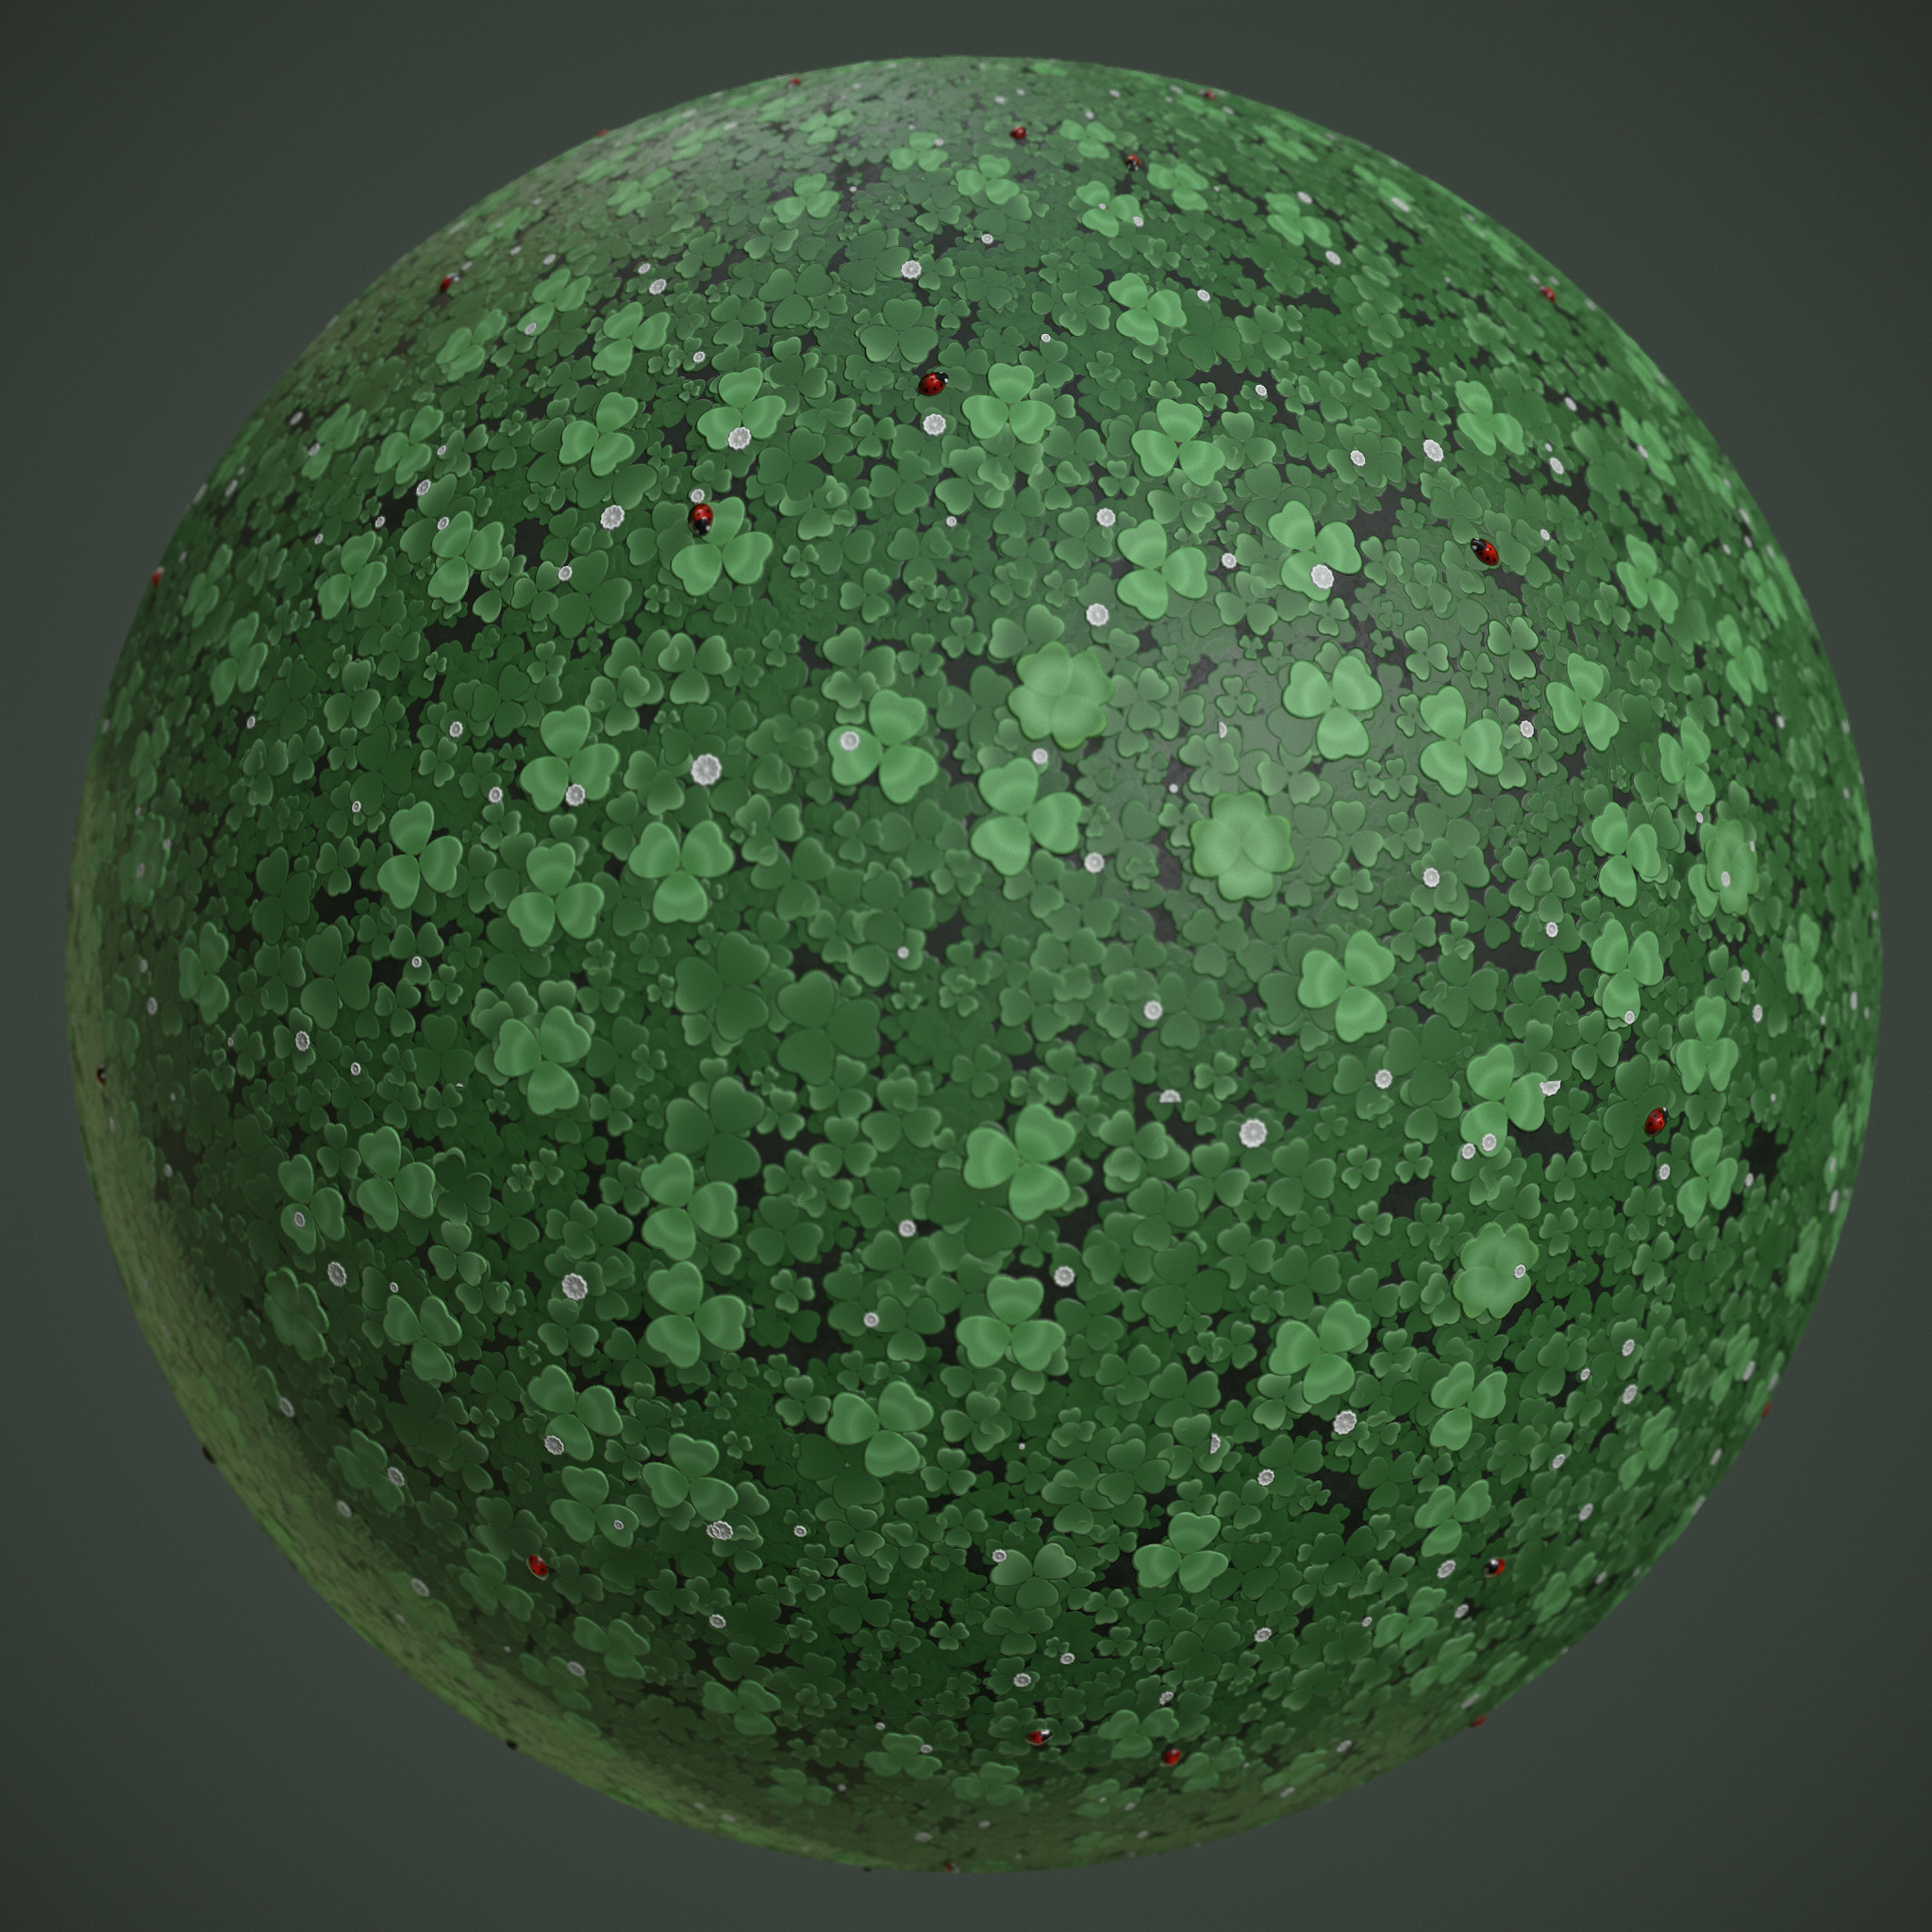 Sphere render